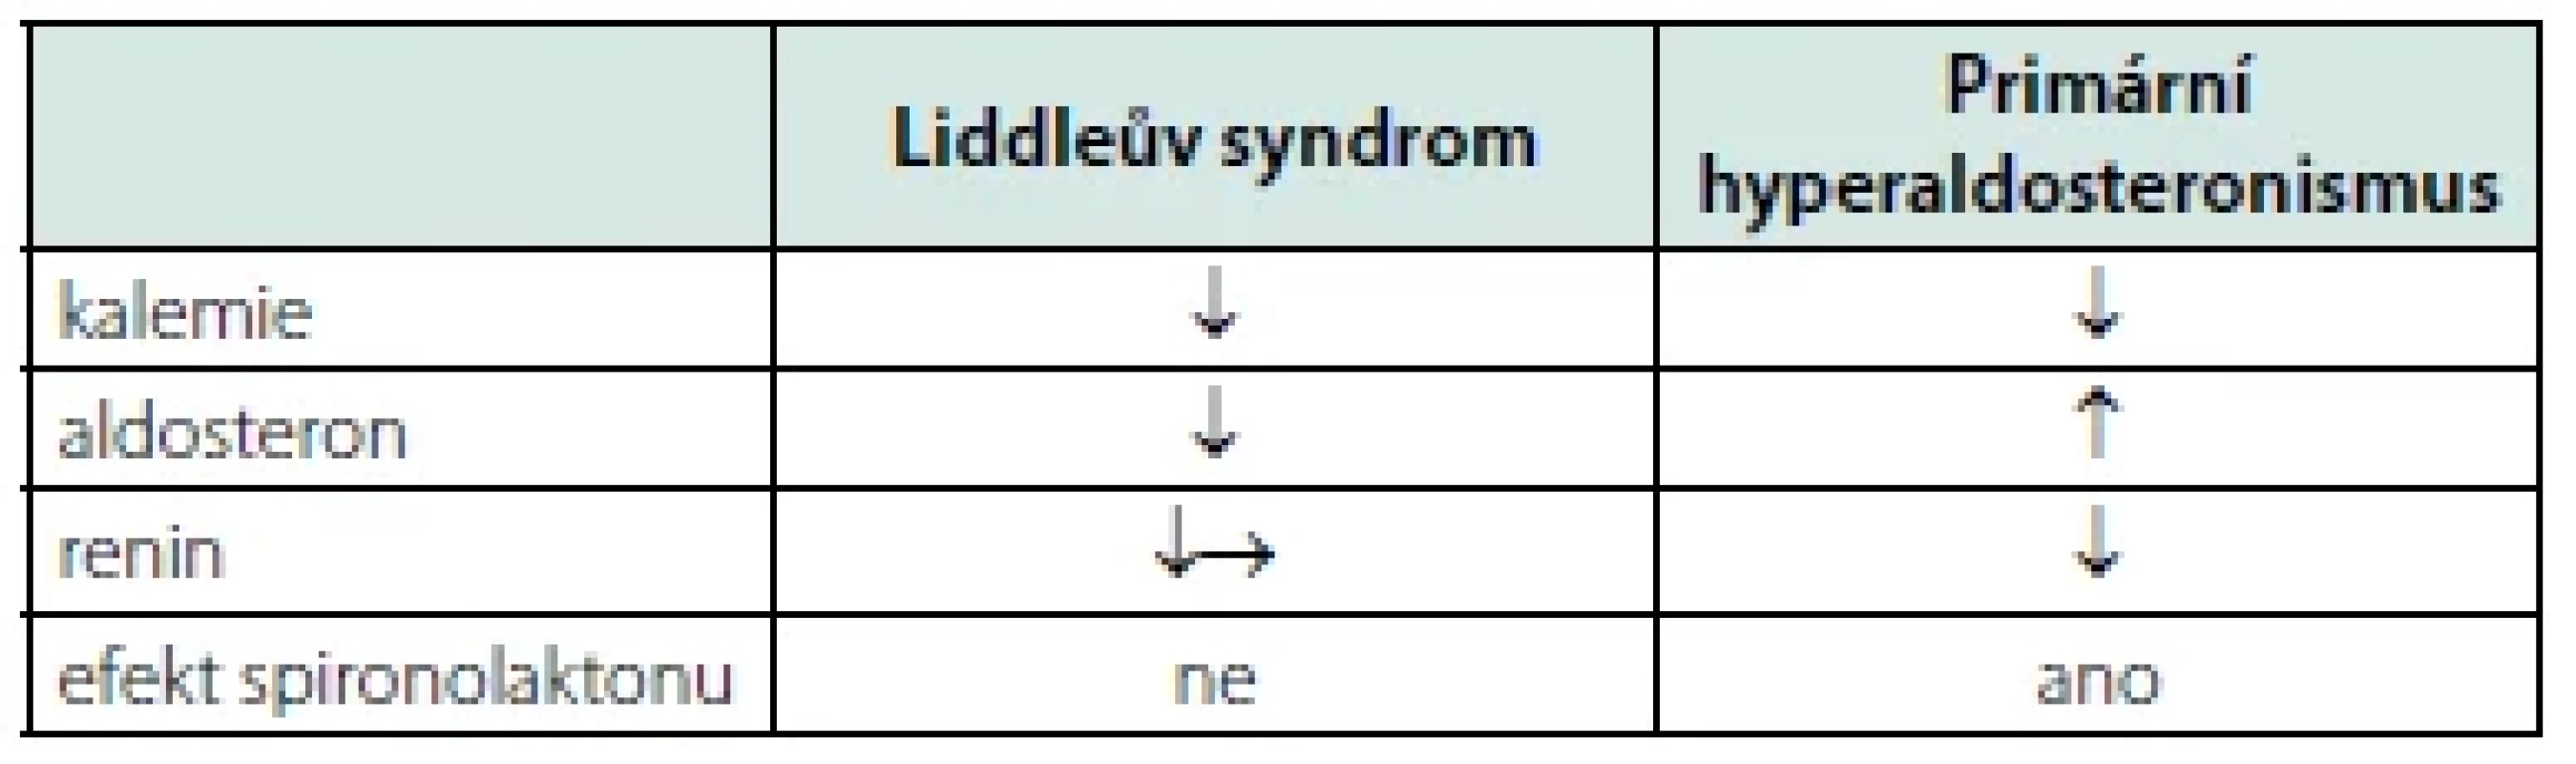 Podobnosti a rozdíly mezi Liddleovým syndromem a primárním
hyperaldosteronismem